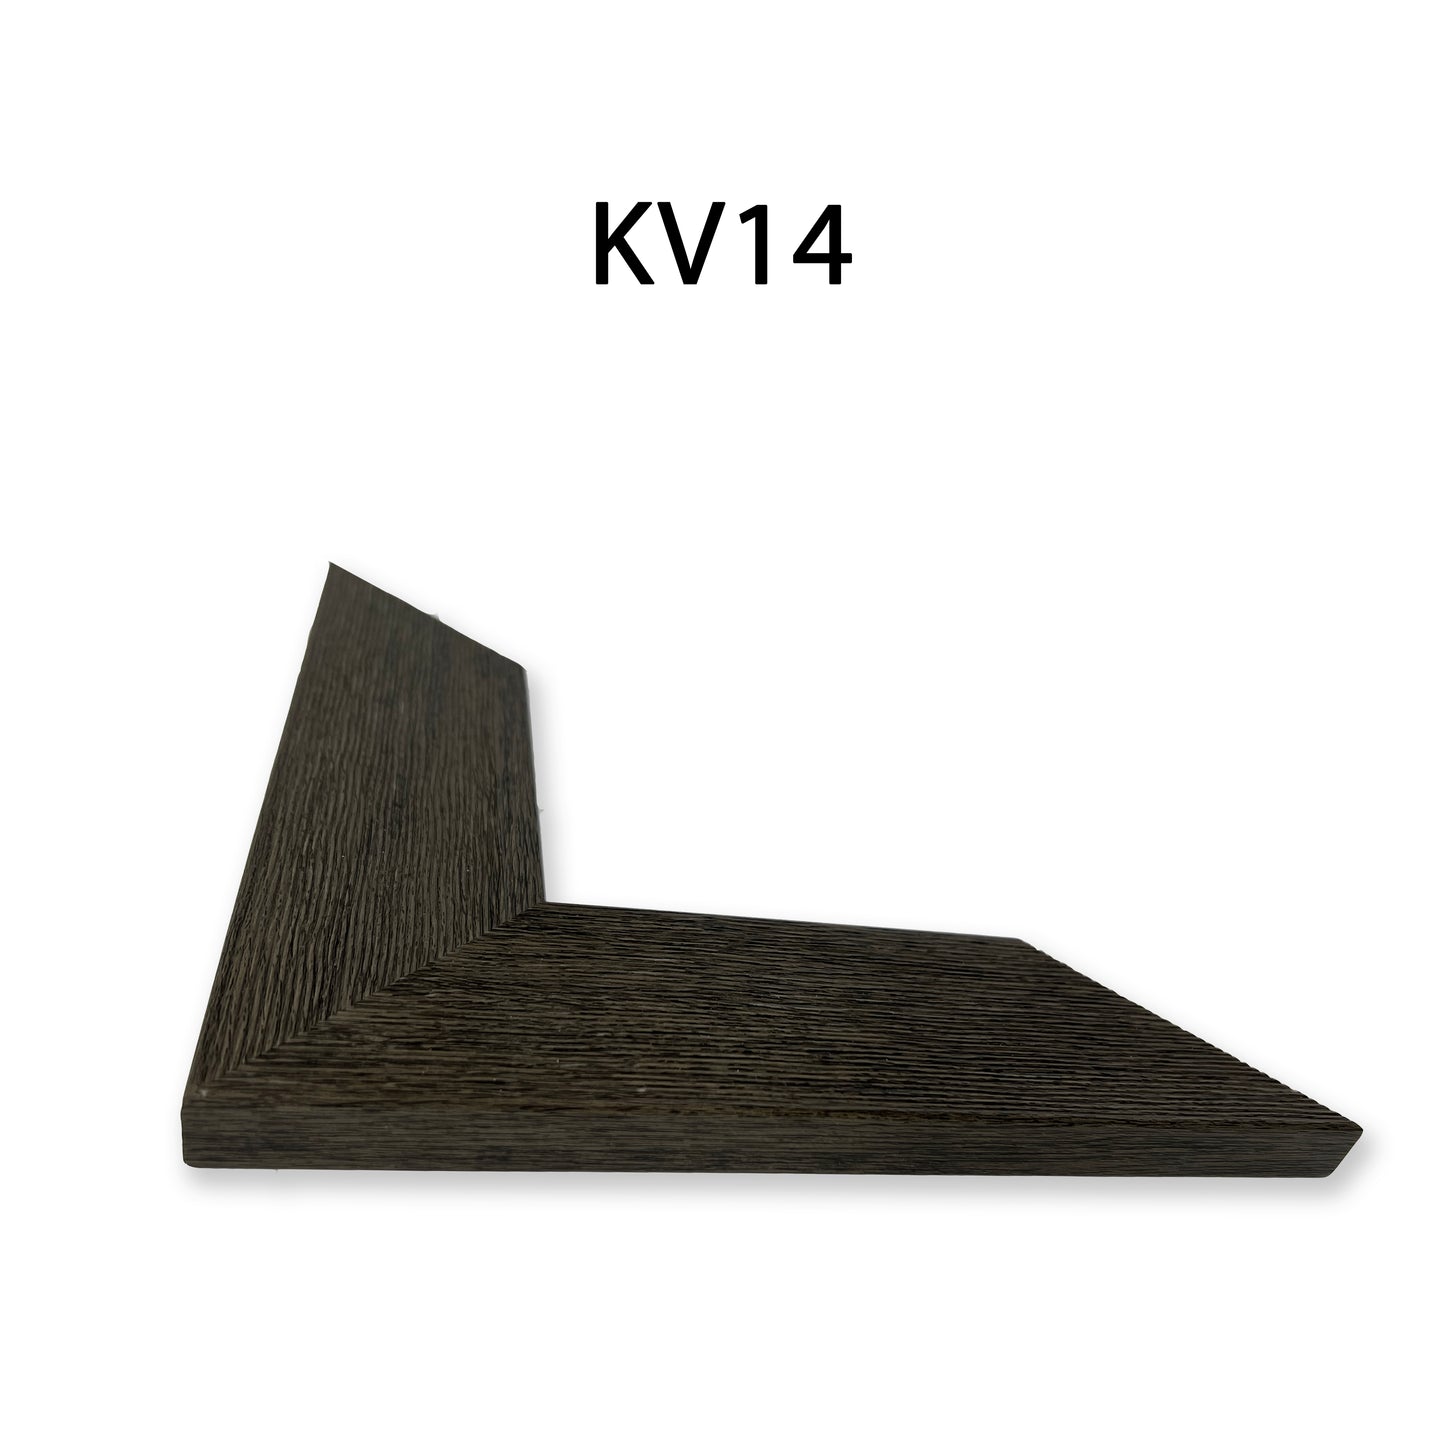 Khung Tranh Bản Vừa 5 cm - KV14